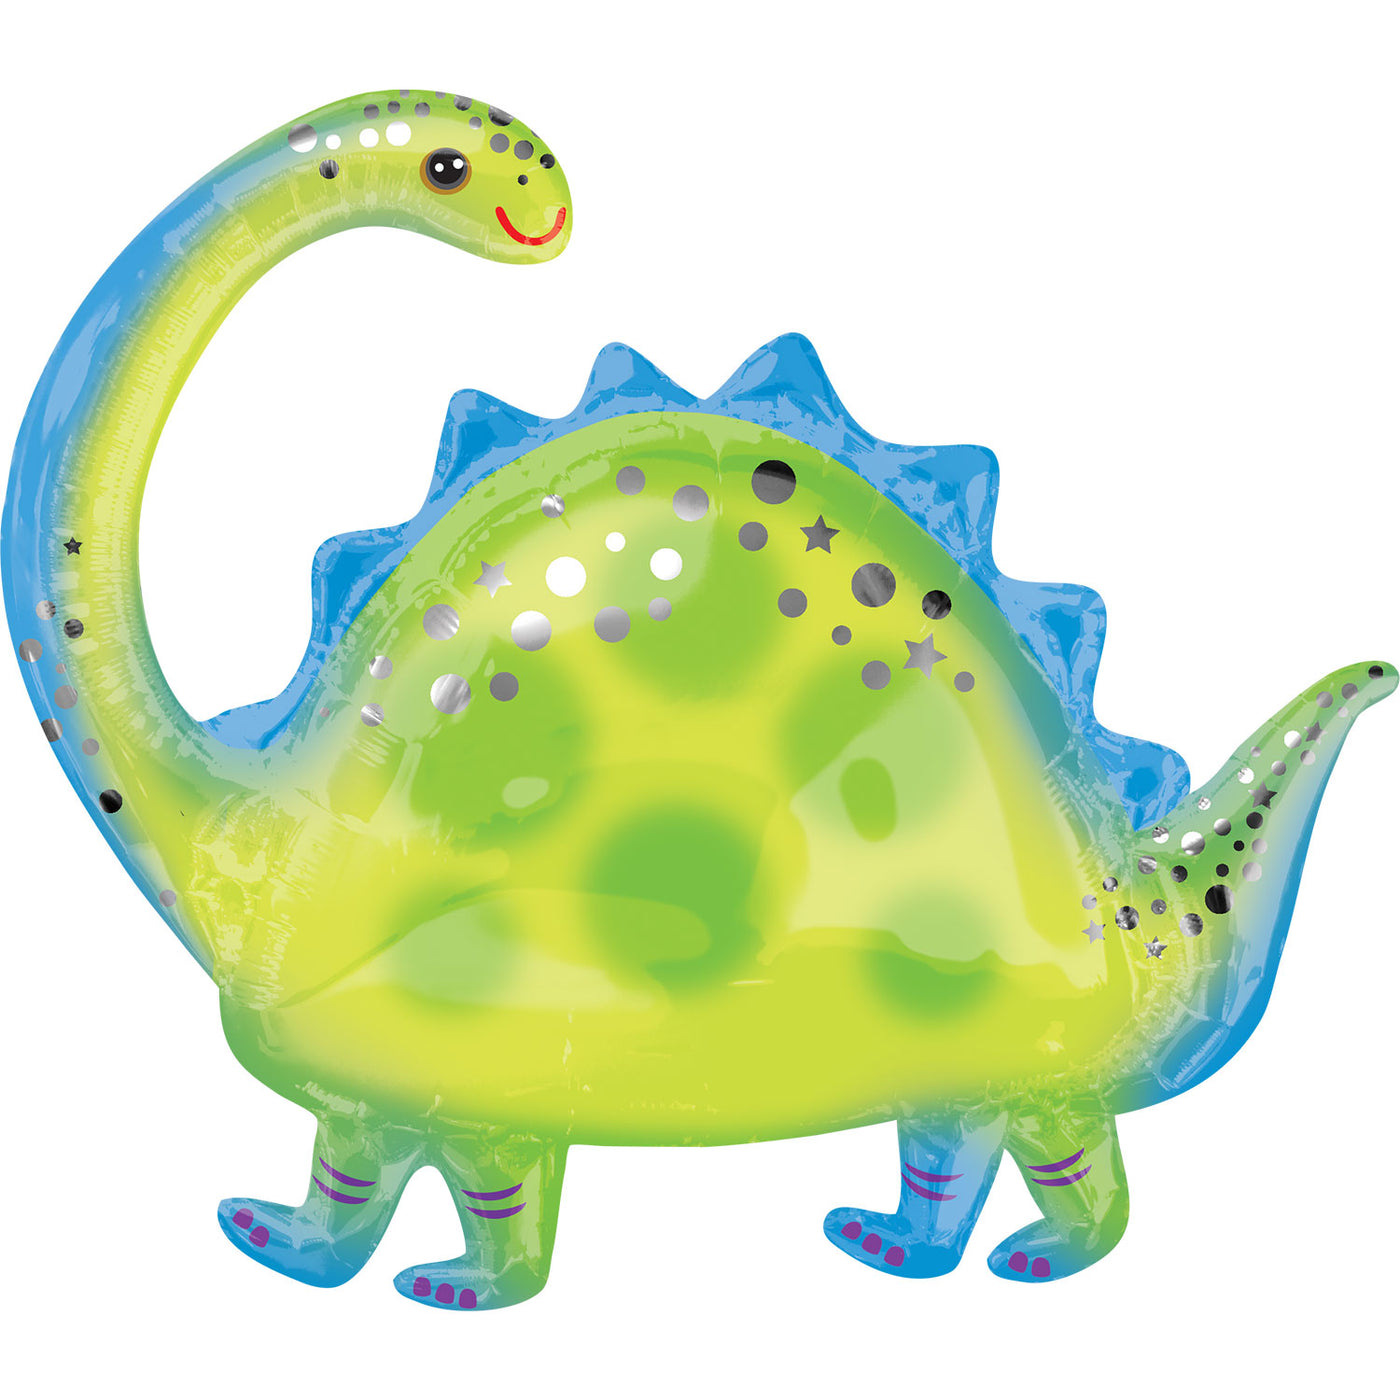 Brontosaurus dinosaur balloon